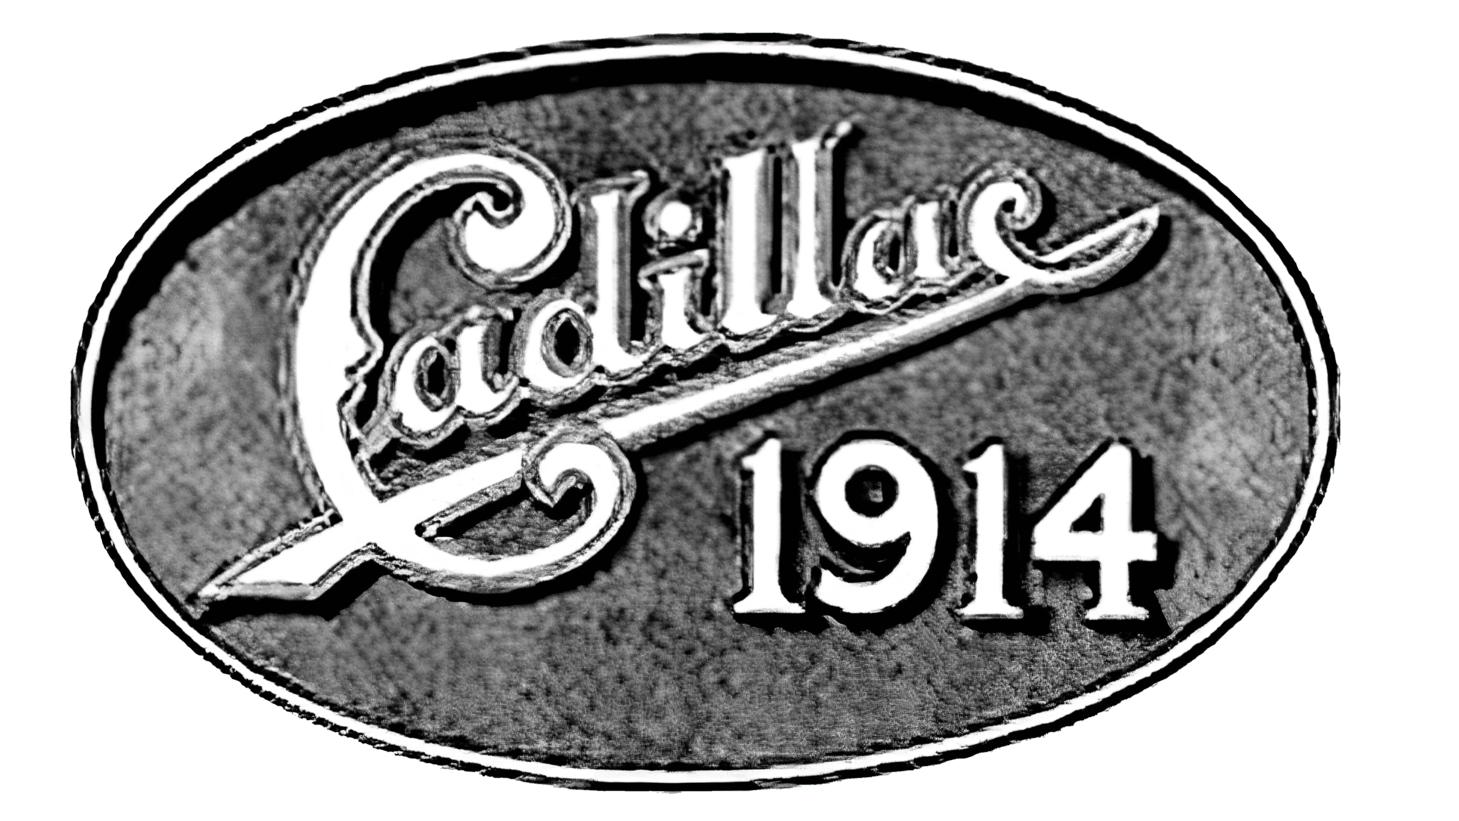 Cadillac sign 1914 1915